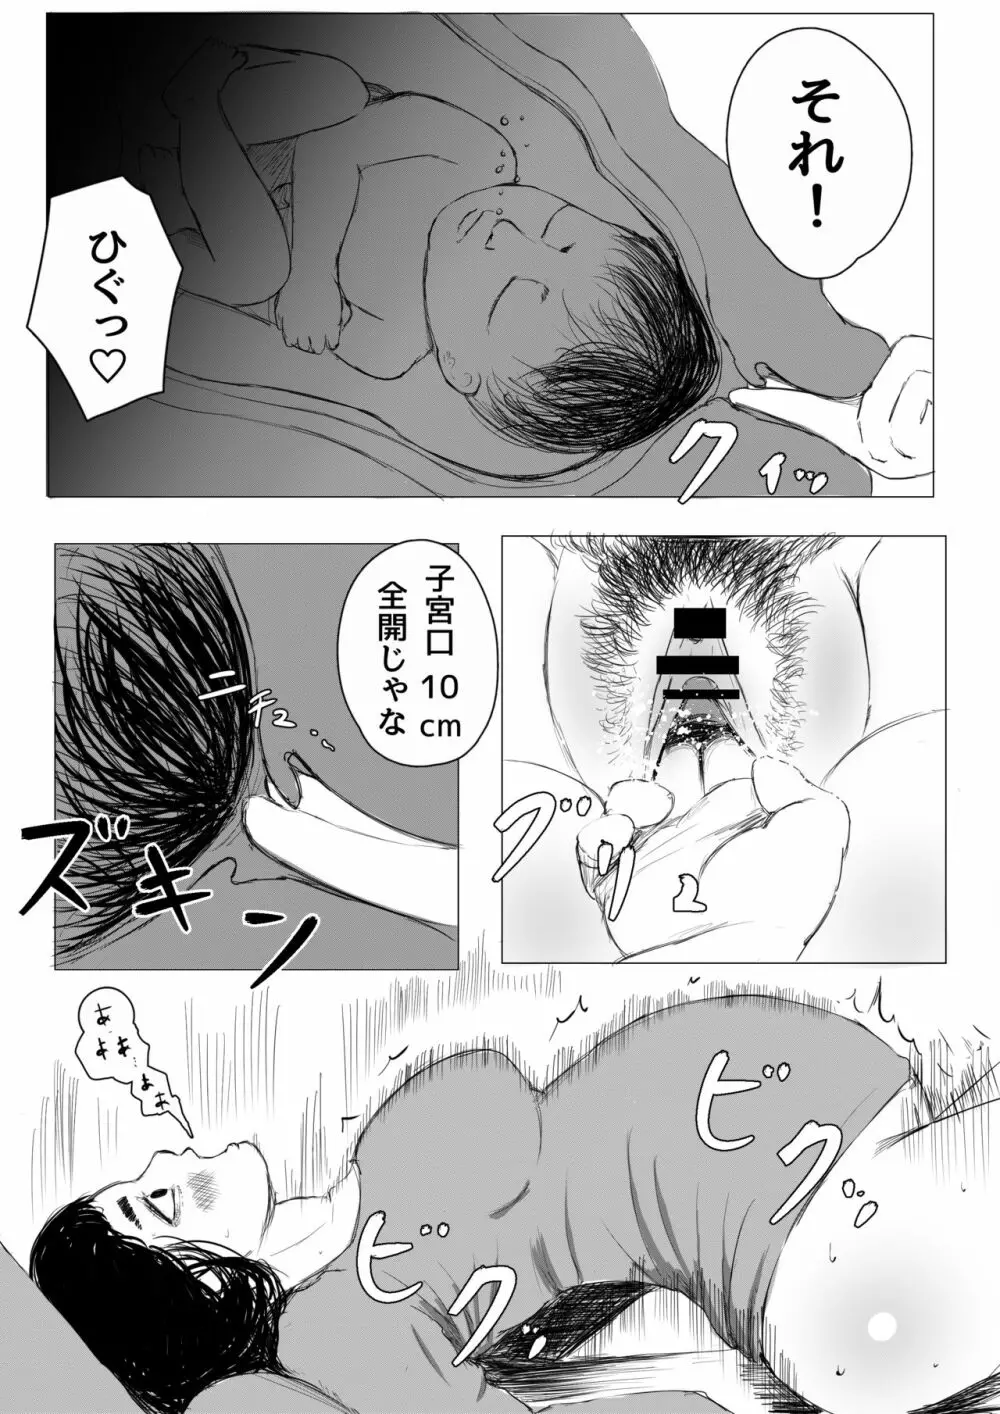 自宅出産のススメ - 同人誌 - エロ漫画 - NyaHentai